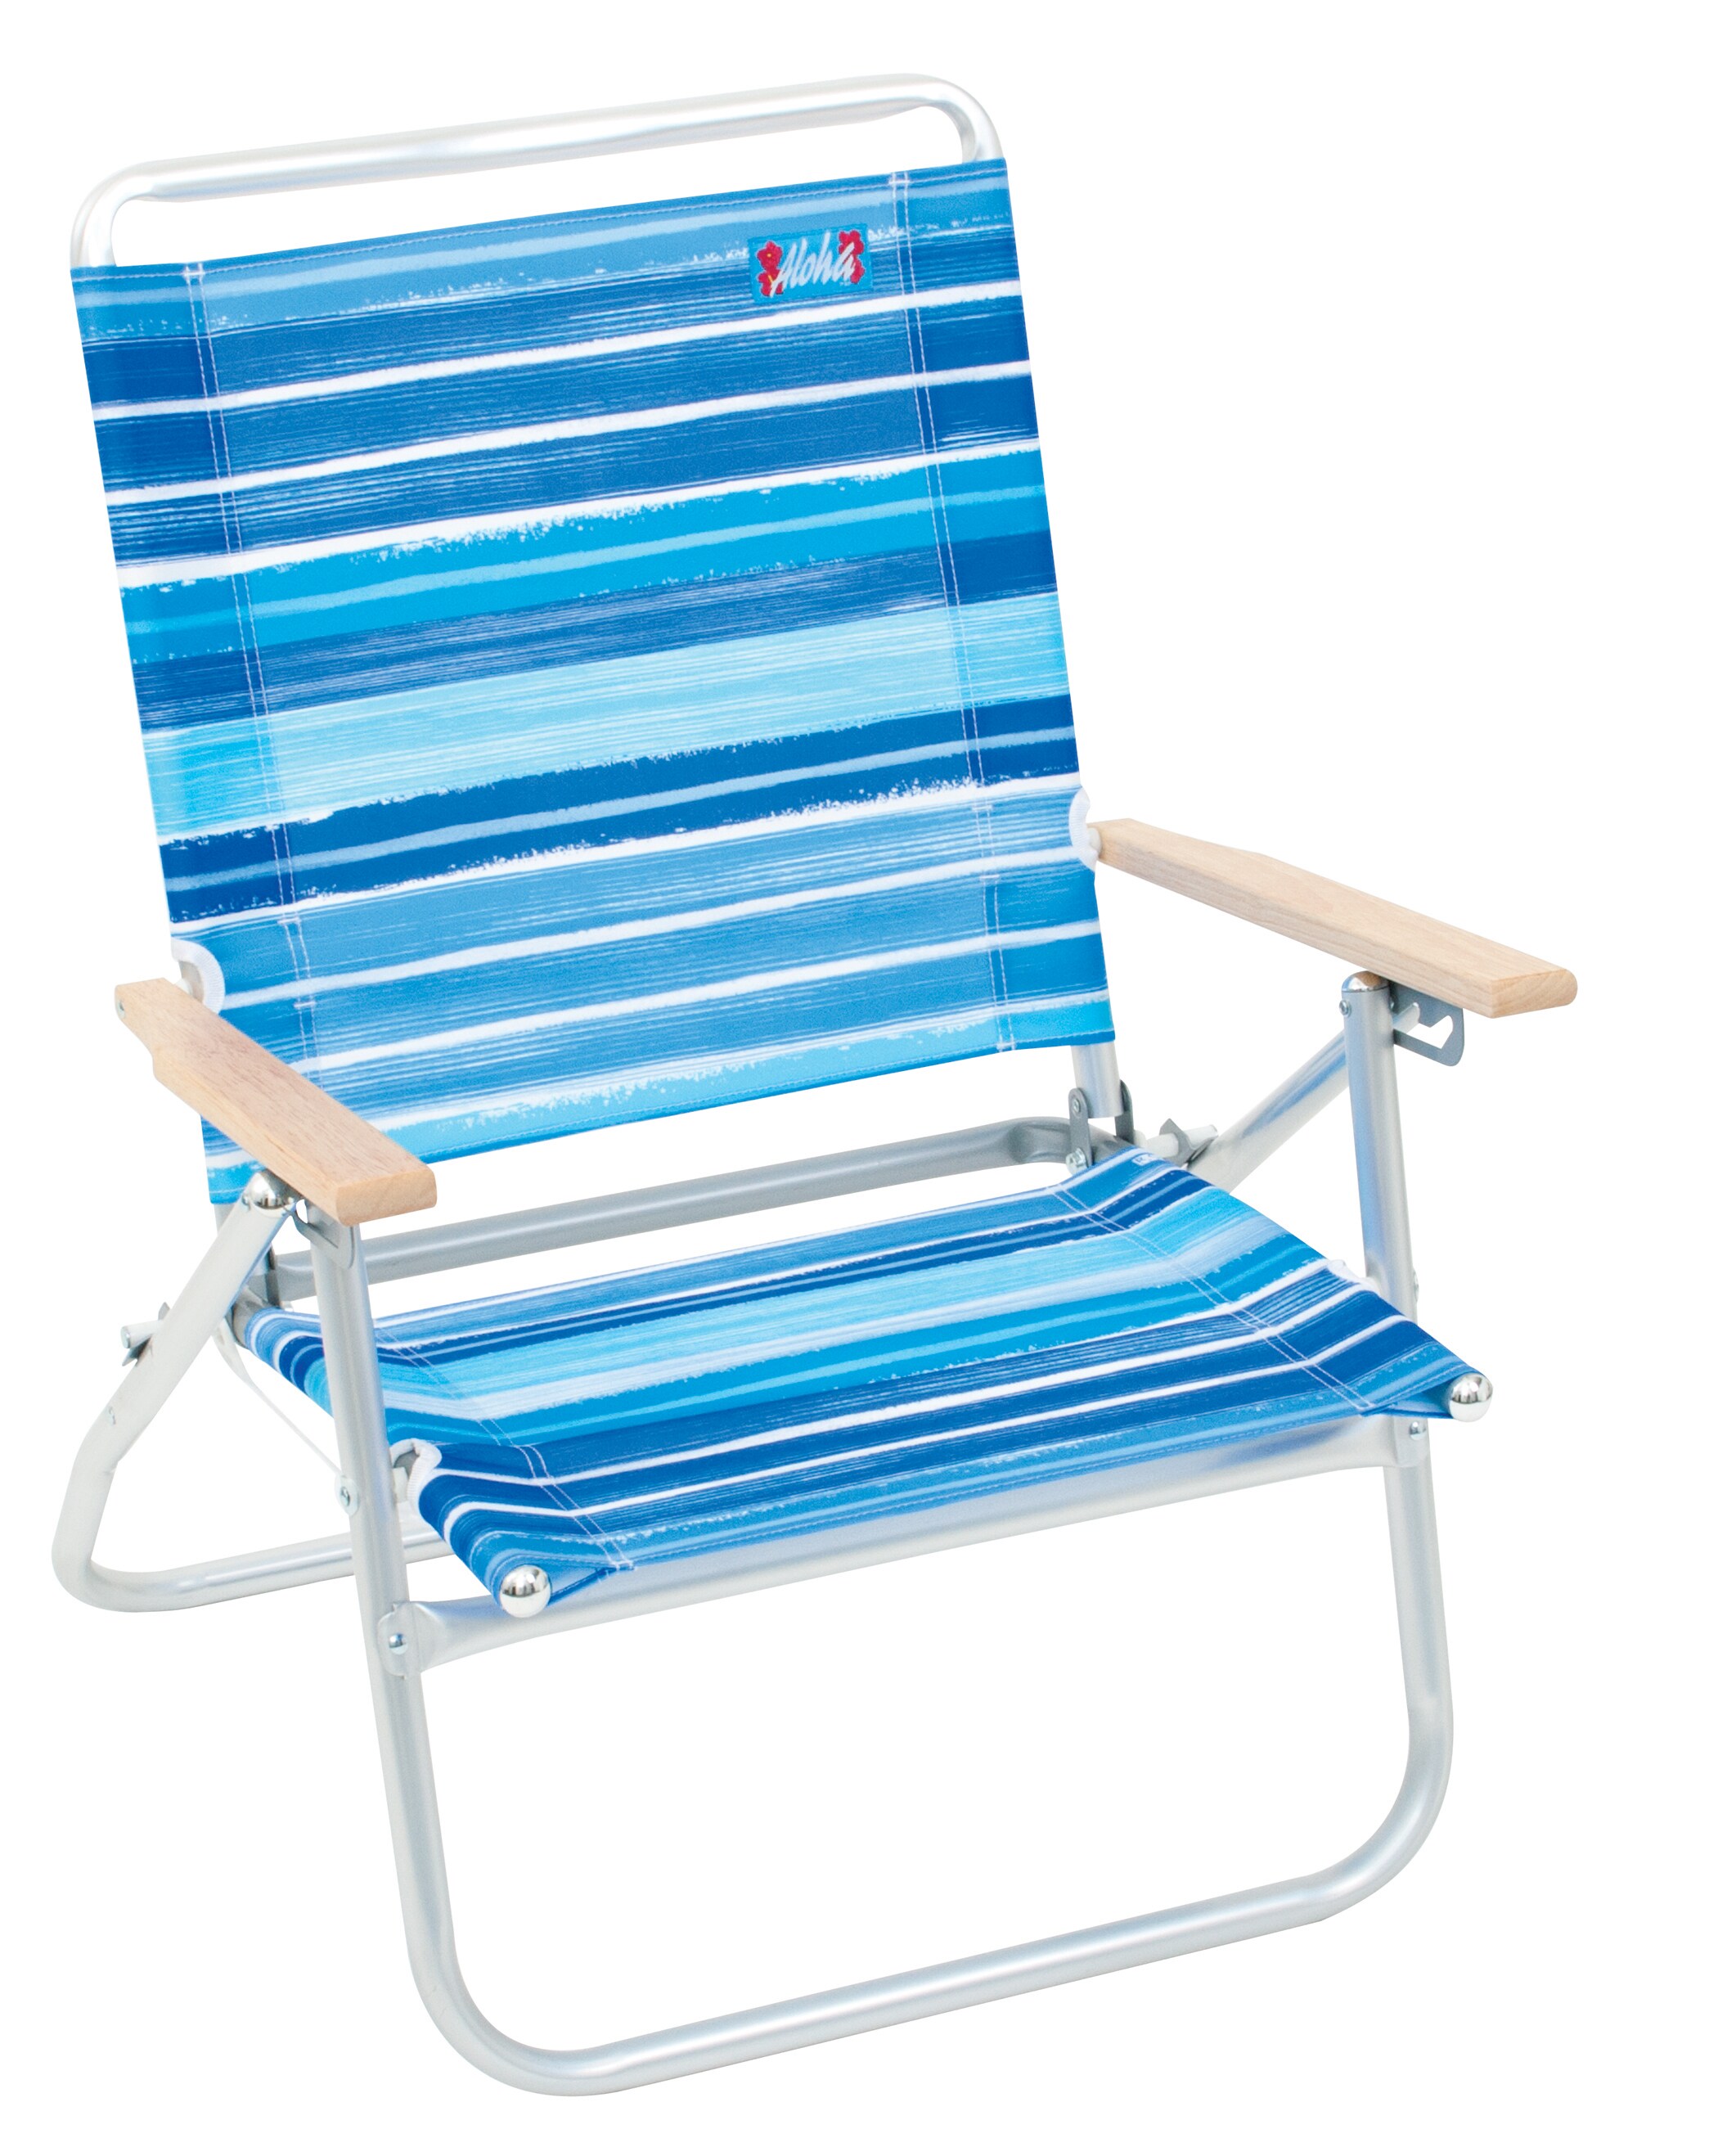 RIO Brands Folding Beach Chair Lowes.com